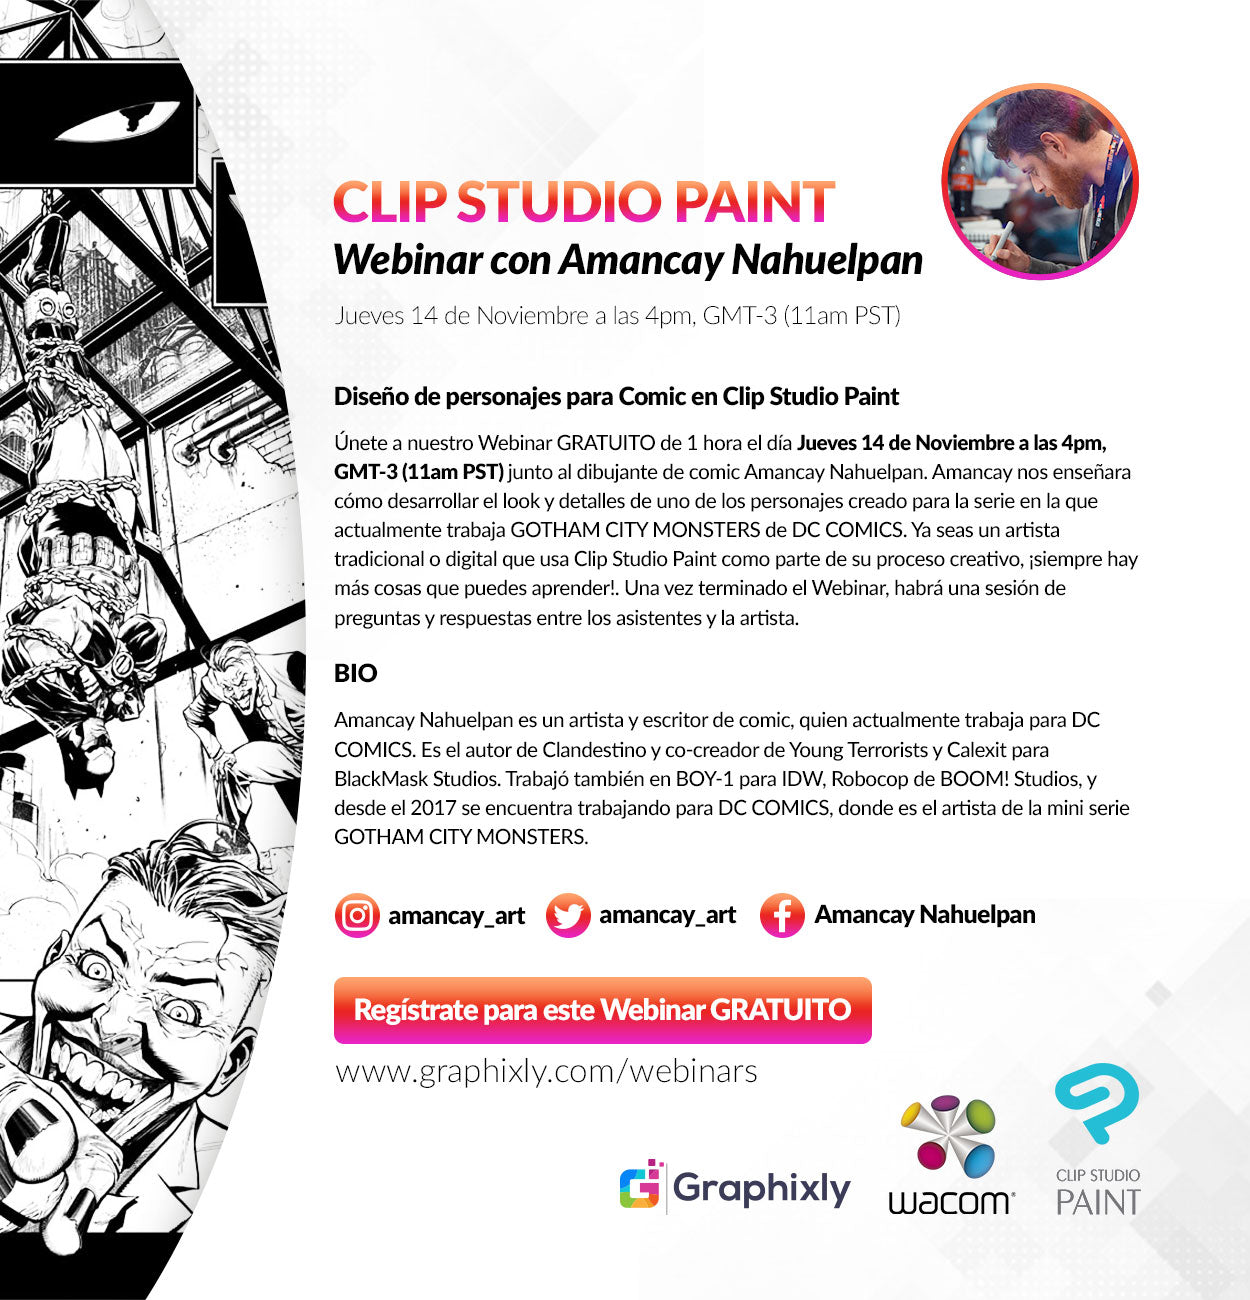 Webinar en español - Diseño de personajes para Comic en Clip Studio Paint con Amancay Nahuelpan